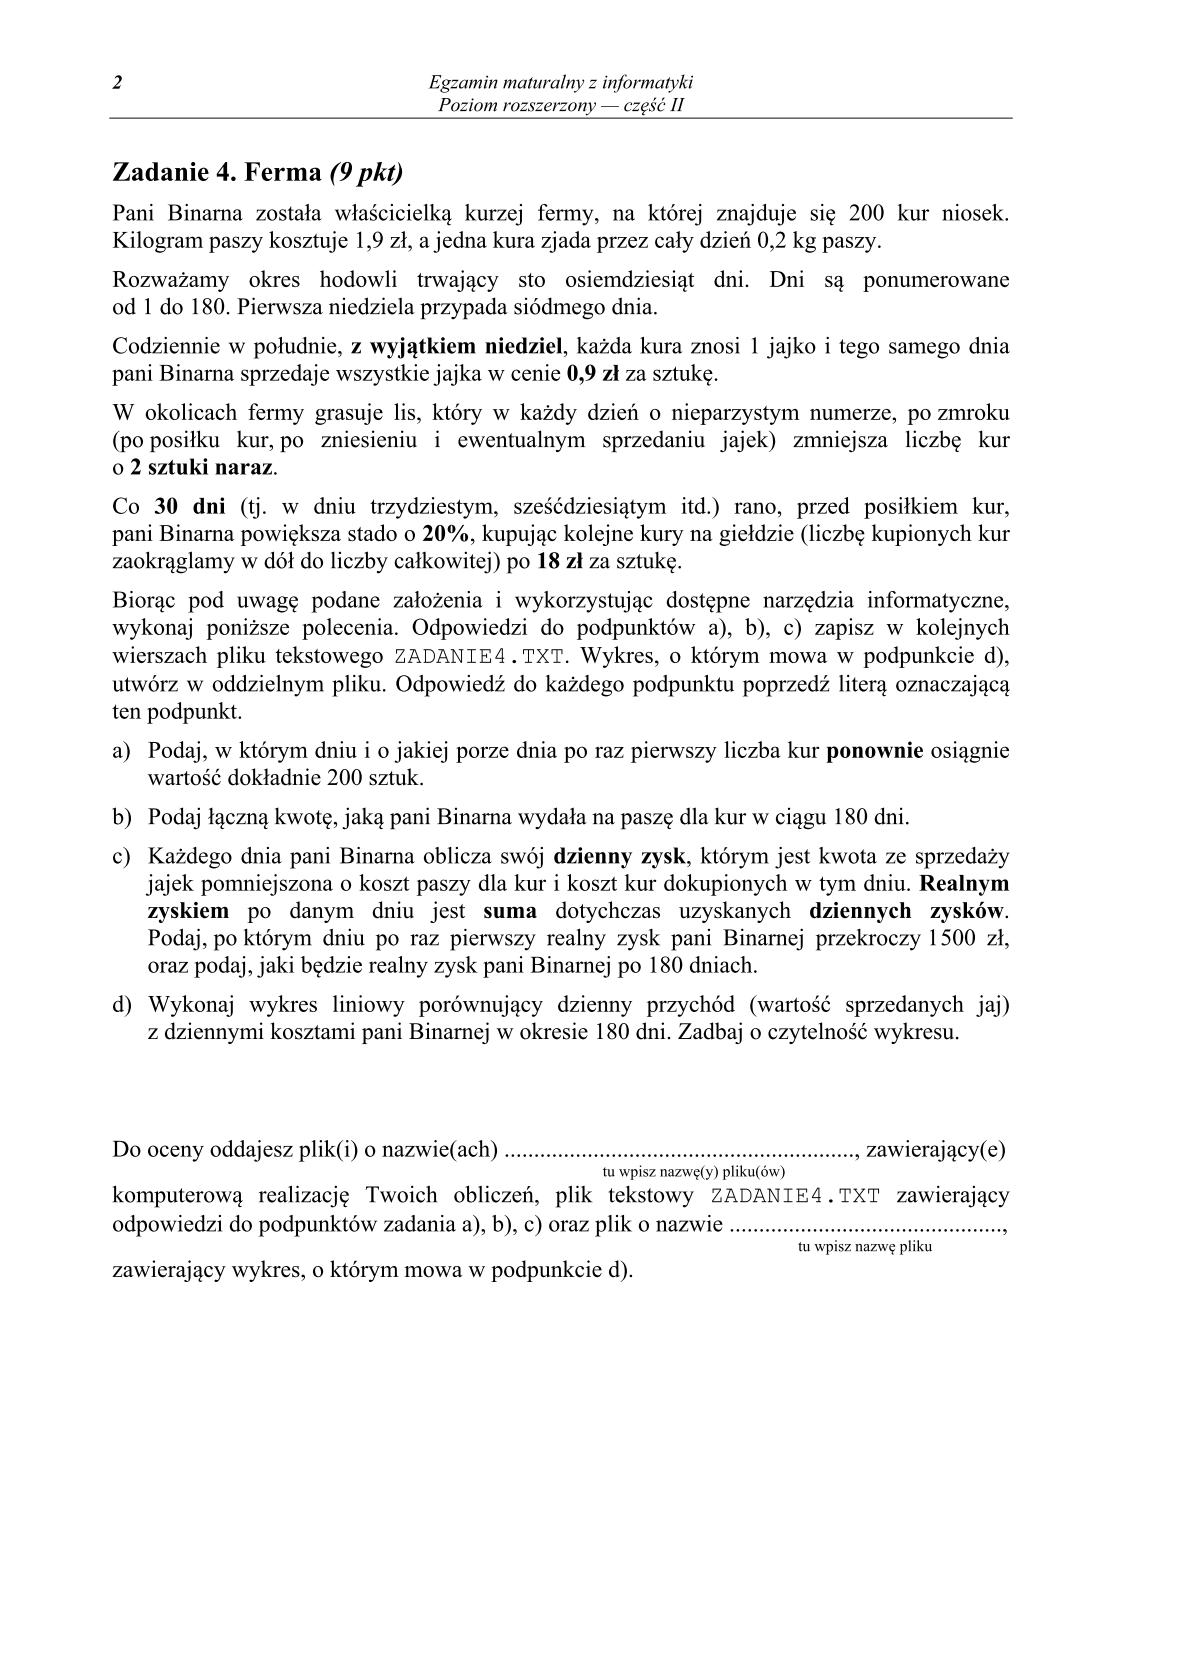 pytania-informatyka-poziom-rozszerzony-czesc-II-matura-2014-str.2